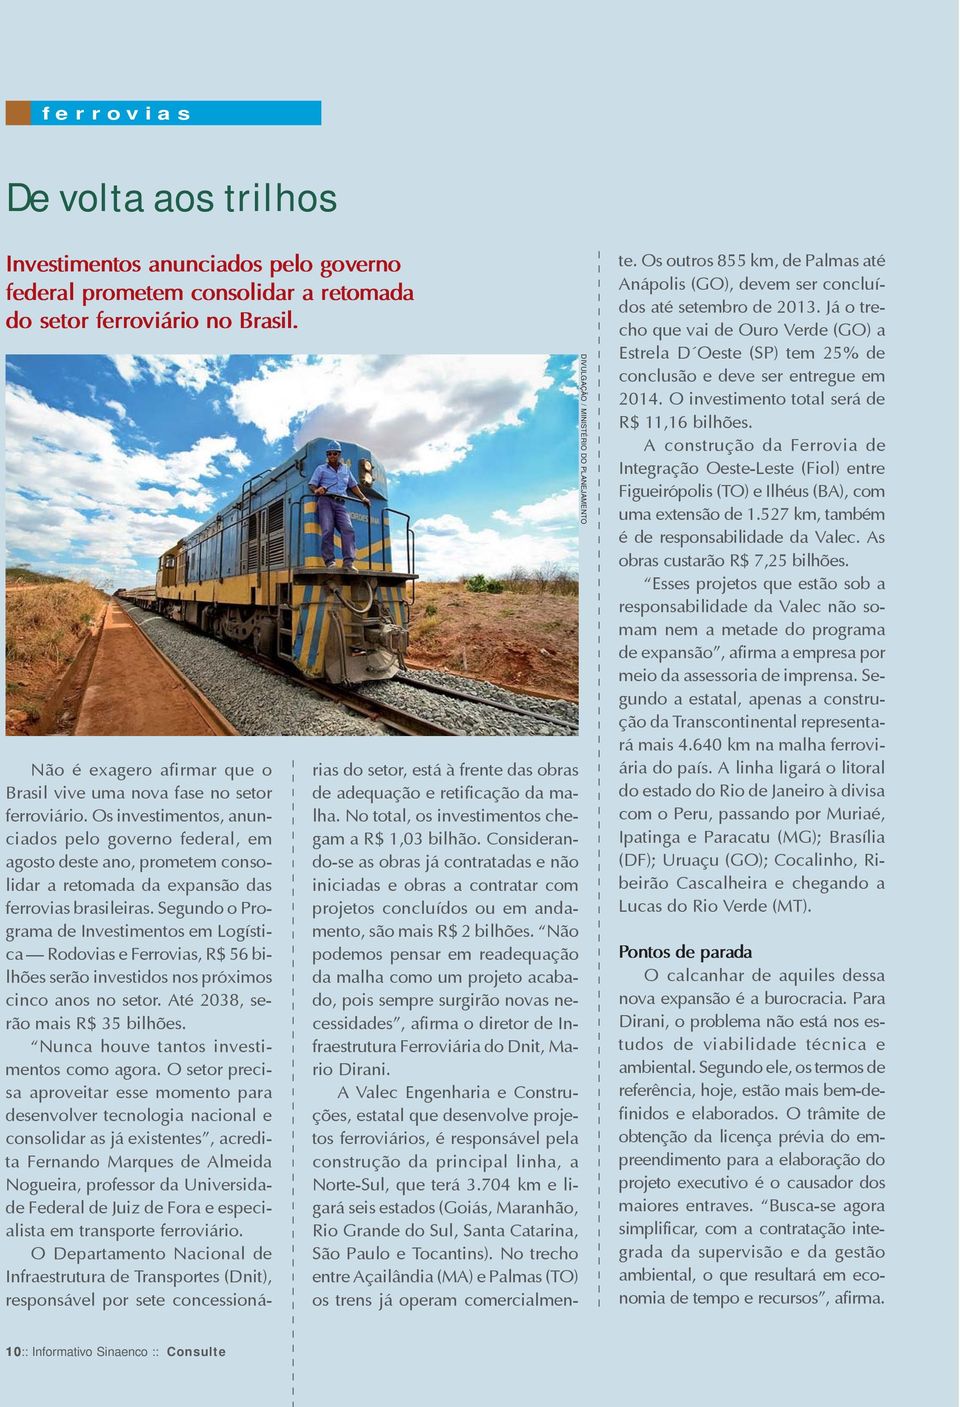 Os investimentos, anunciados pelo governo federal, em agosto deste ano, prometem consolidar a retomada da expansão das ferrovias brasileiras.